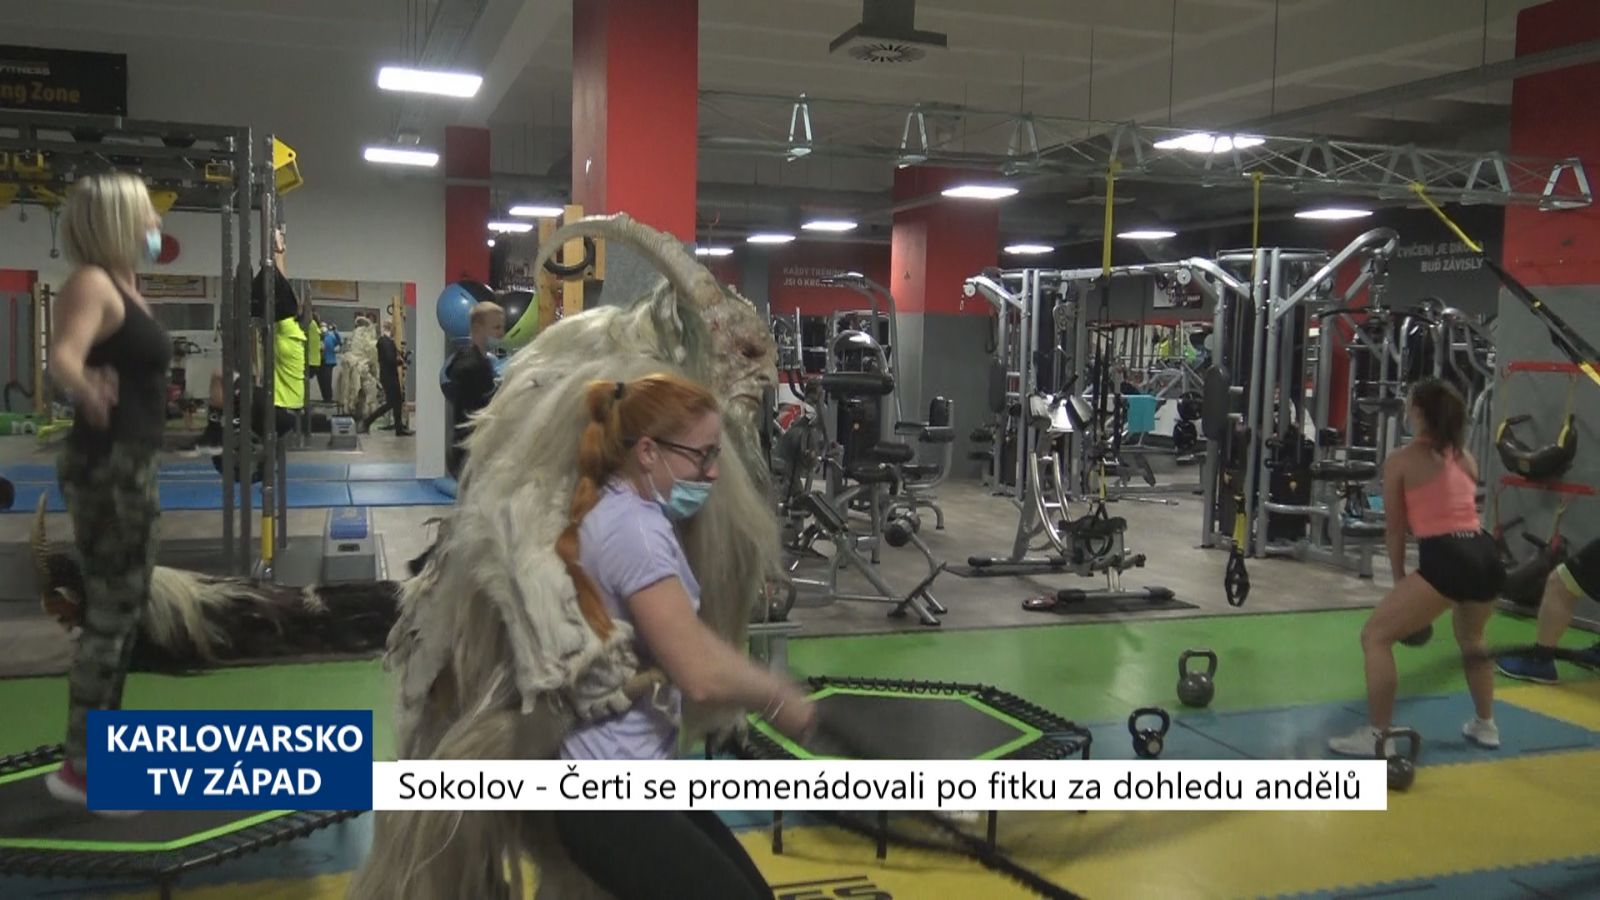 Sokolov: Čerti se promenádovali ve fitku za dohledu andělů (TV Západ)